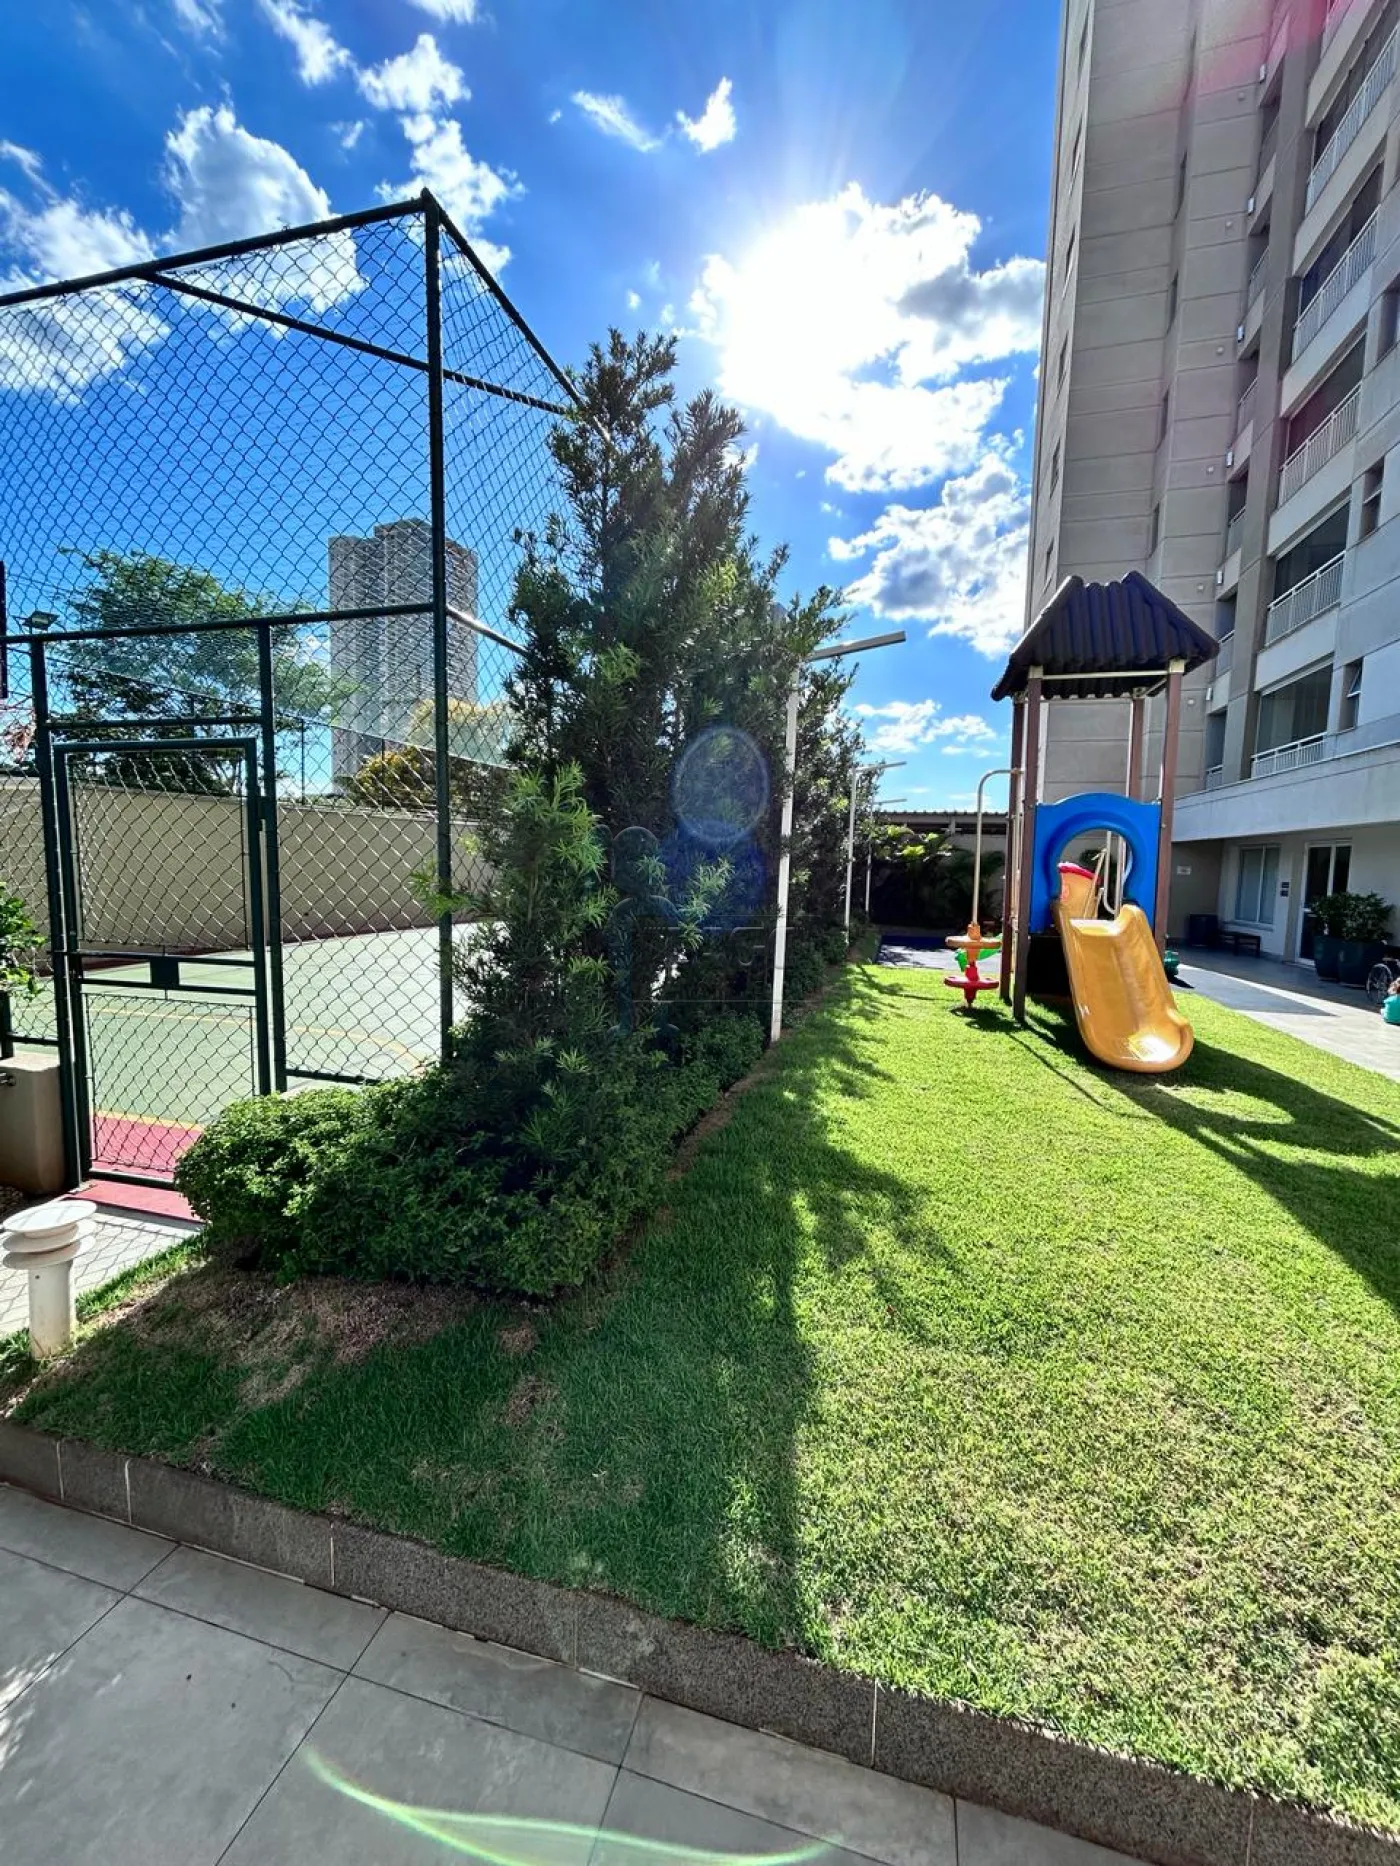 Comprar Apartamentos / Padrão em Ribeirão Preto R$ 580.000,00 - Foto 19